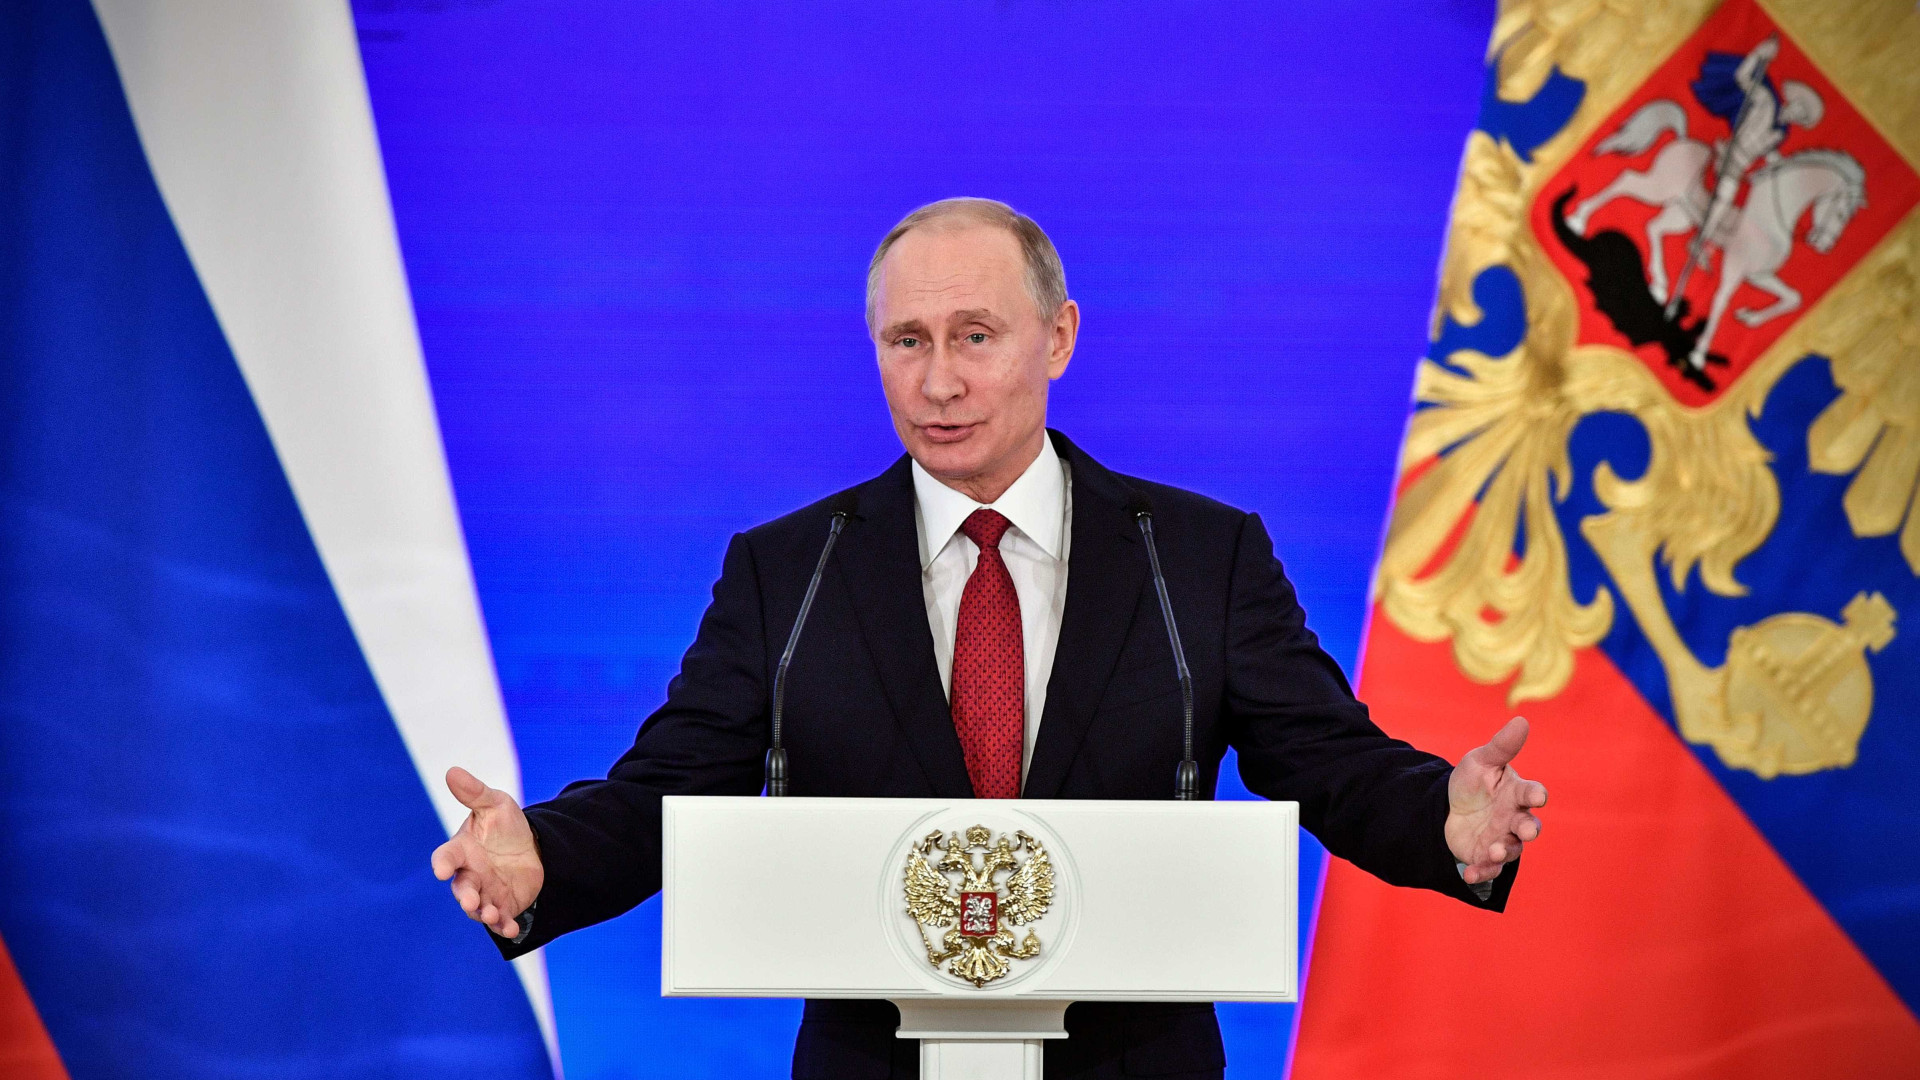 EUA criou esquema de doping para afetar eleições, diz Putin